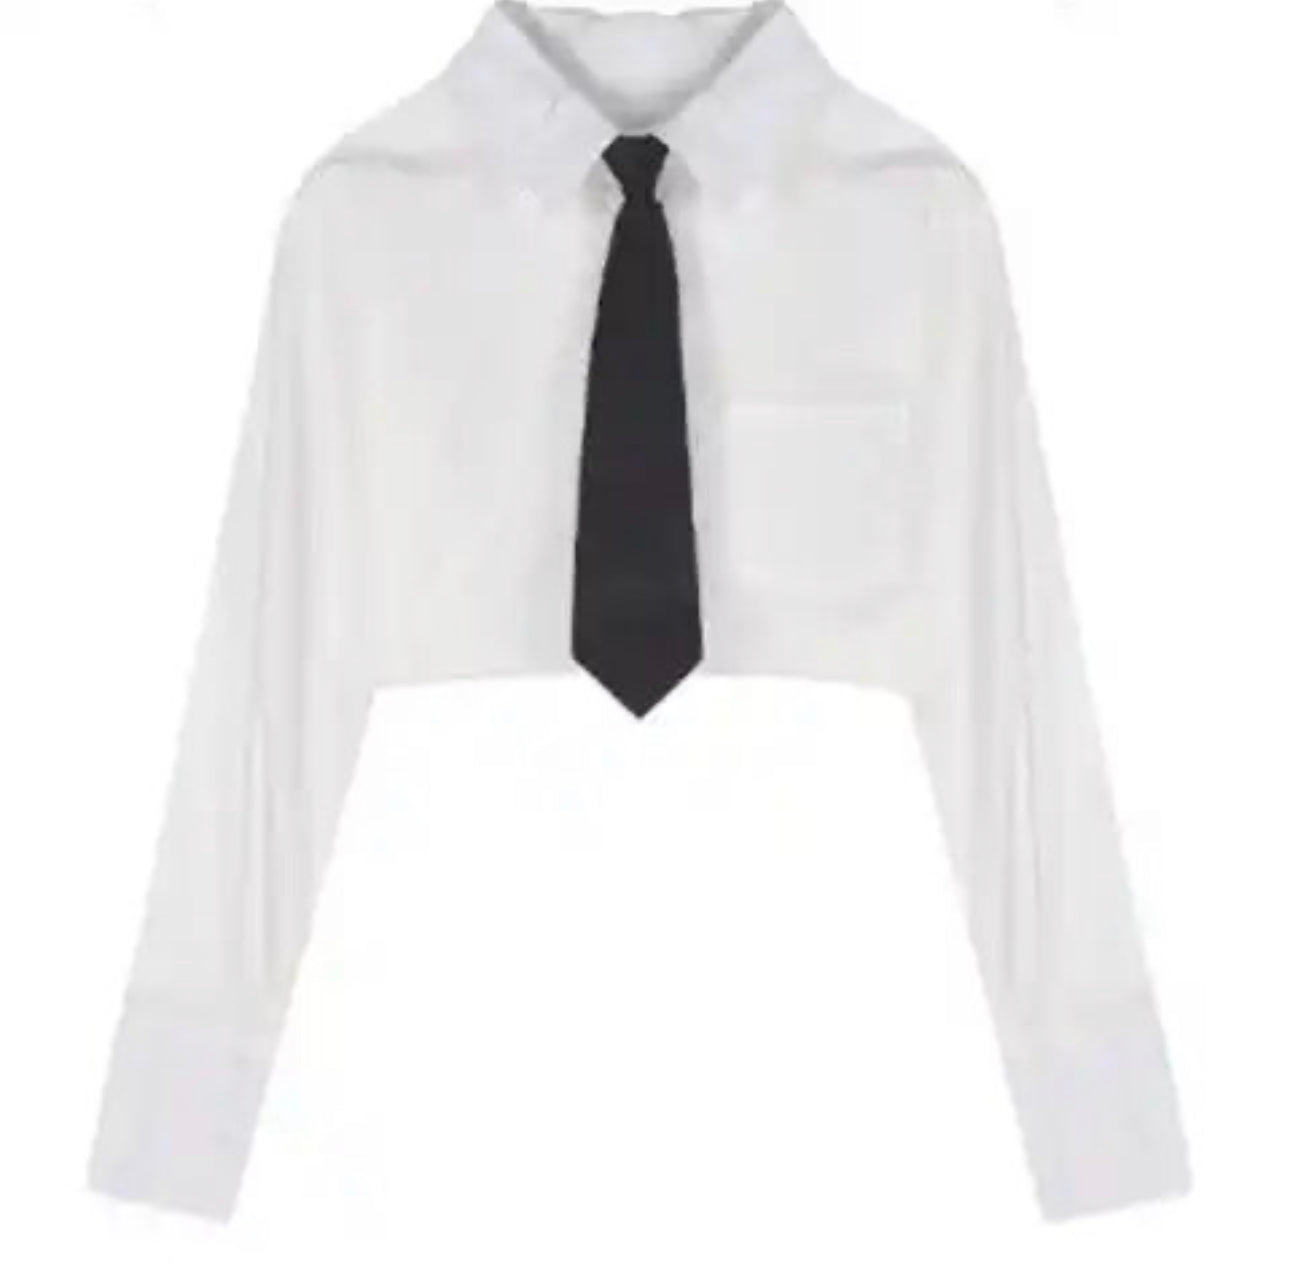 Crop Shirt with Tie